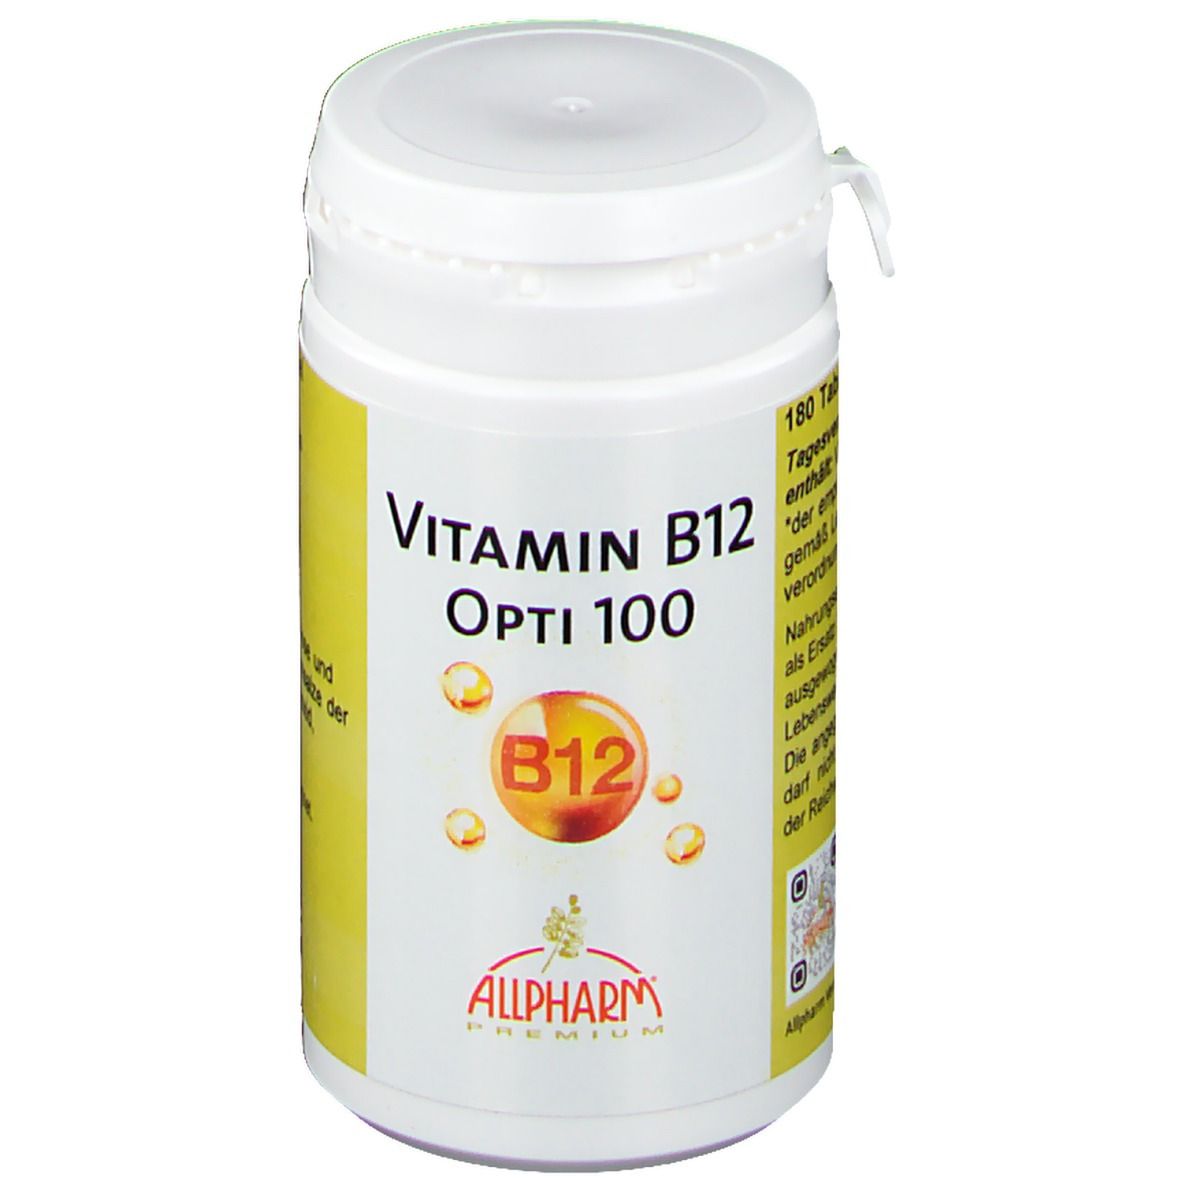 Image of Vitamin B12 Opti 100